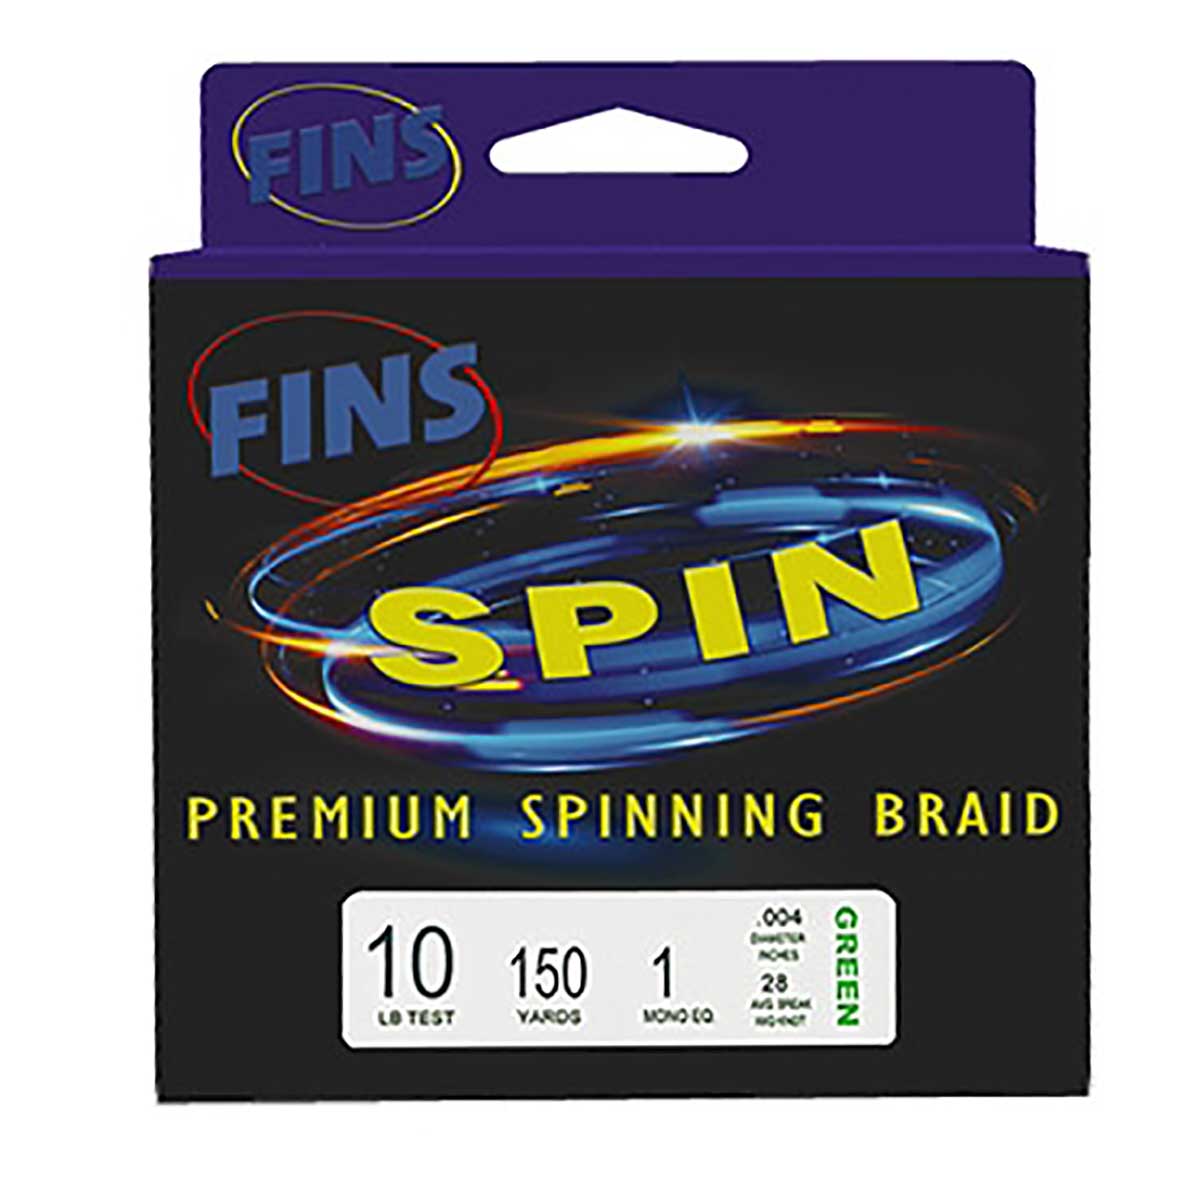 Fins Spin, 5 uçlu örgü yapısı kullanılarak oluşturulan 1. sınıf spin makara örgüsüdür